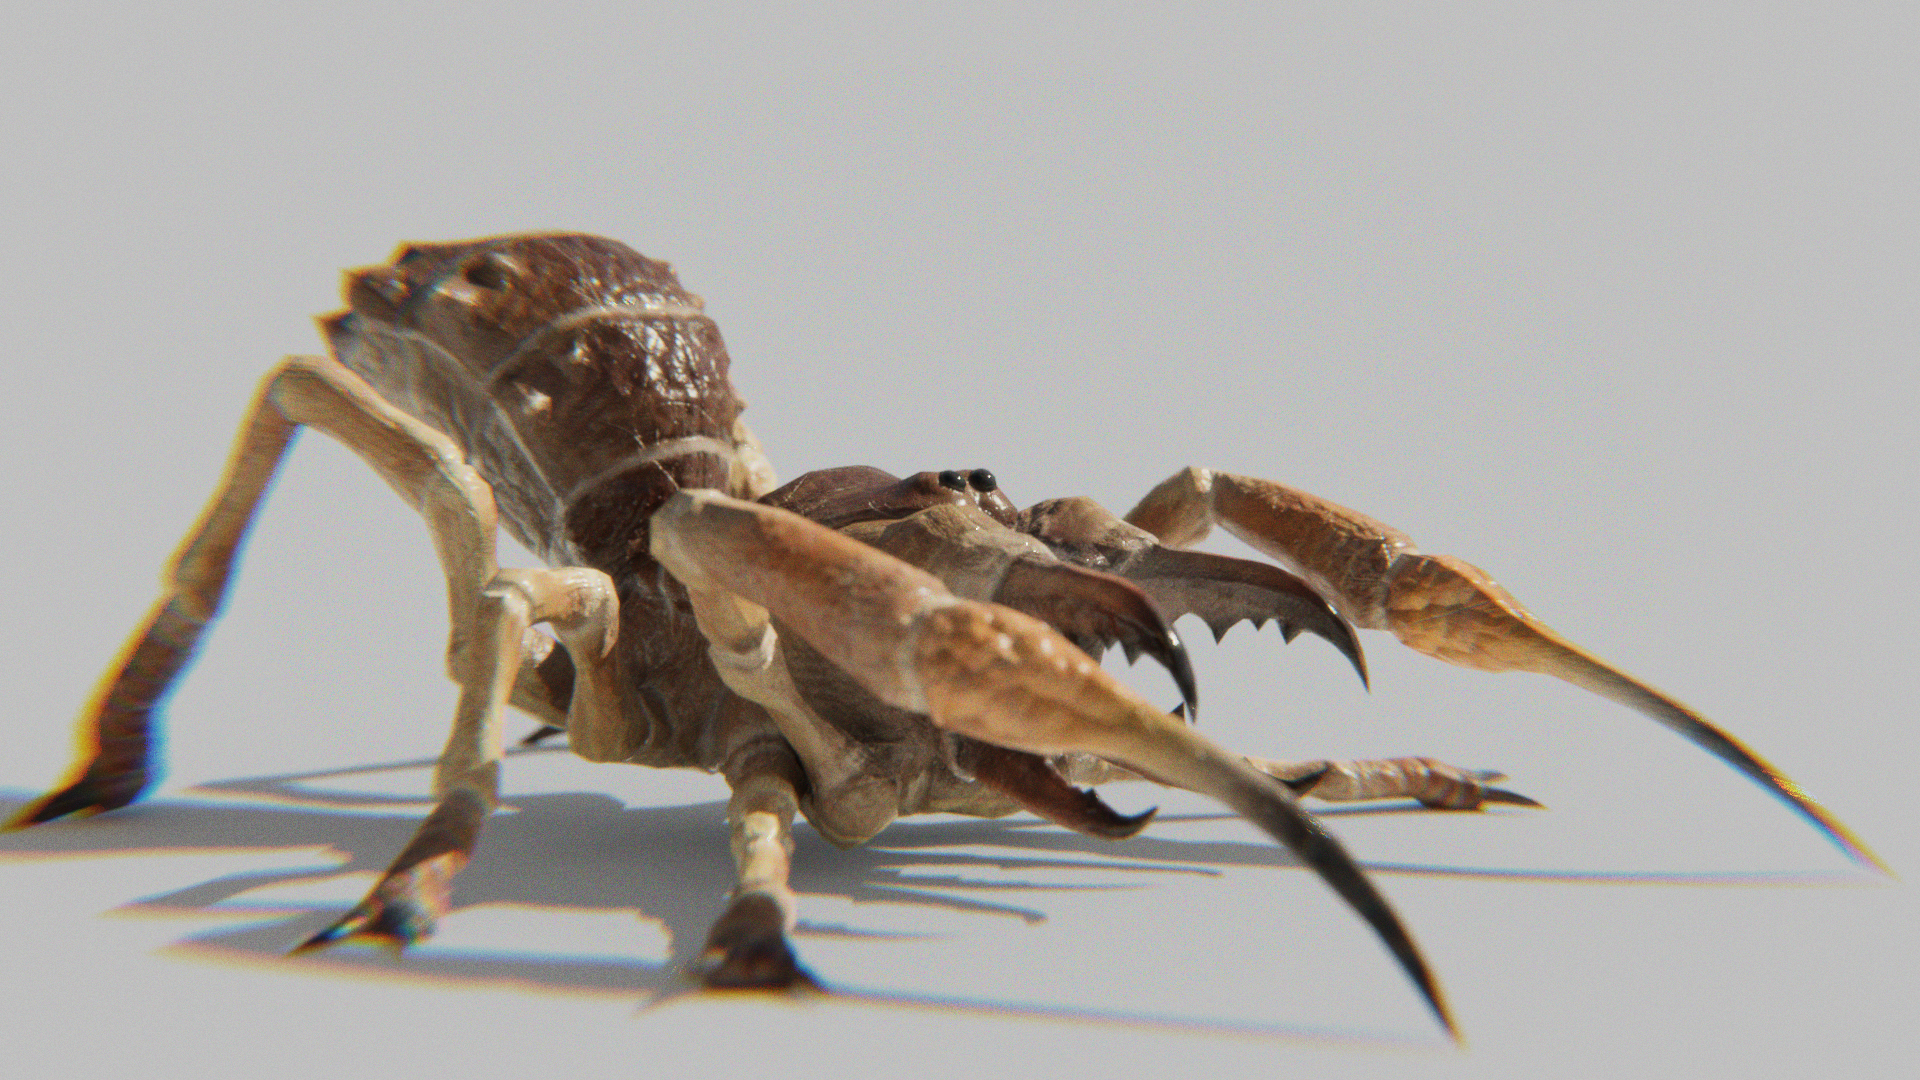 Sunspider / Camel Spider / Solufuge monster crouching defense pose, 3d model.